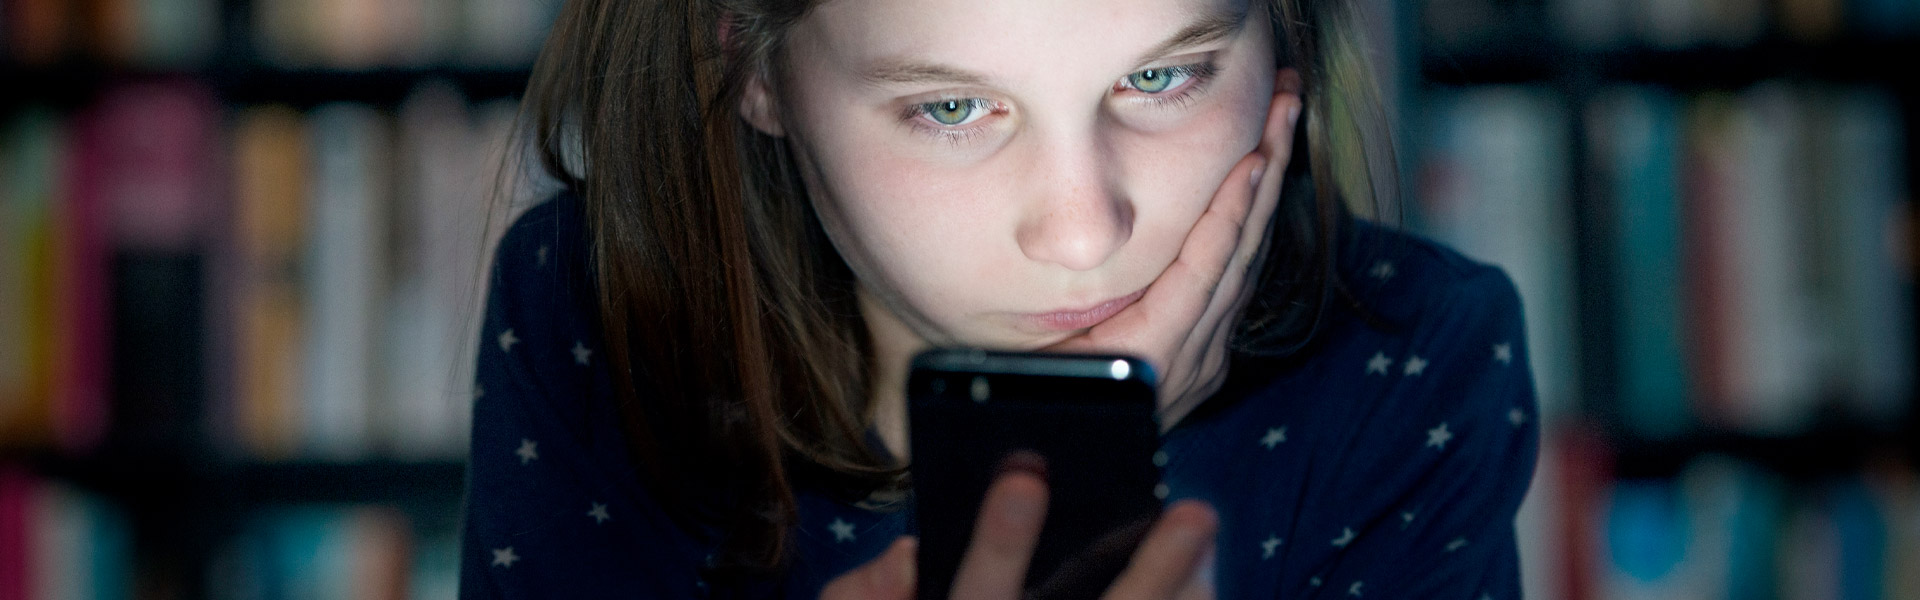 Mädchen blickt im Dunkeln traurig auf ihr Handy